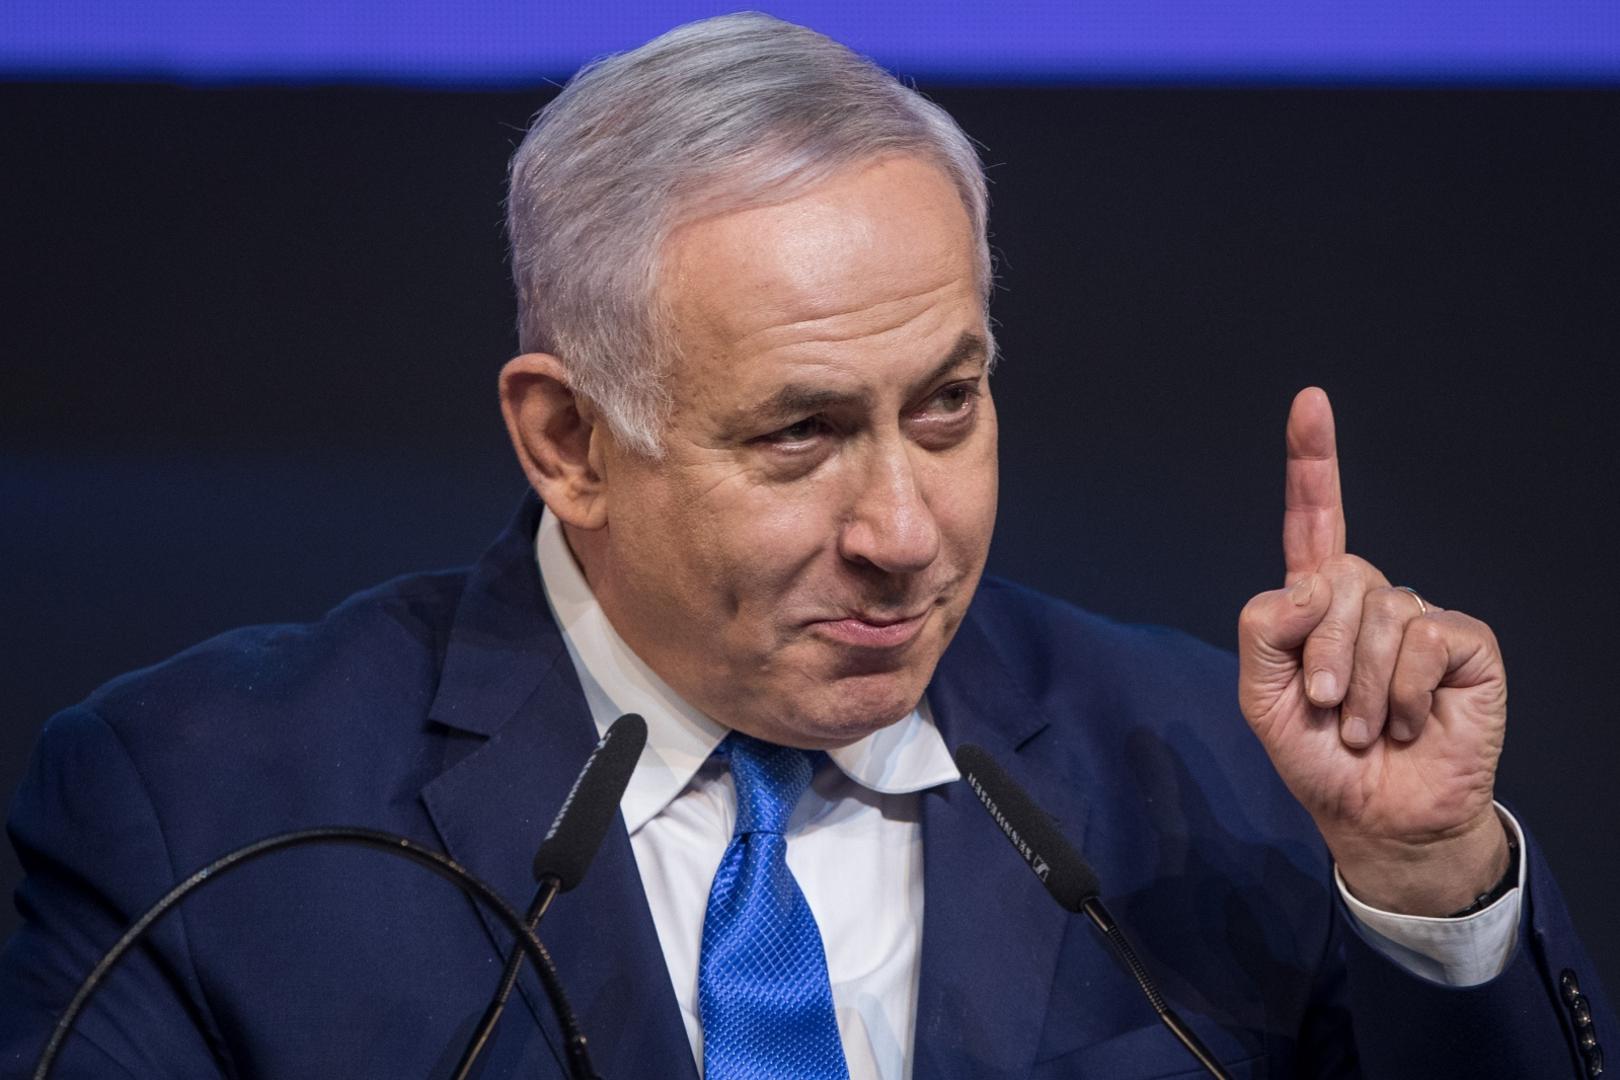 Stranka Likud Benjamina Netanyahua ima isti broj mjesta kao i Plavo i bijelo, ali Netanyahu zna da će lakše sastaviti vlast. Nakon izbora grlio je svoju suprugu Saru